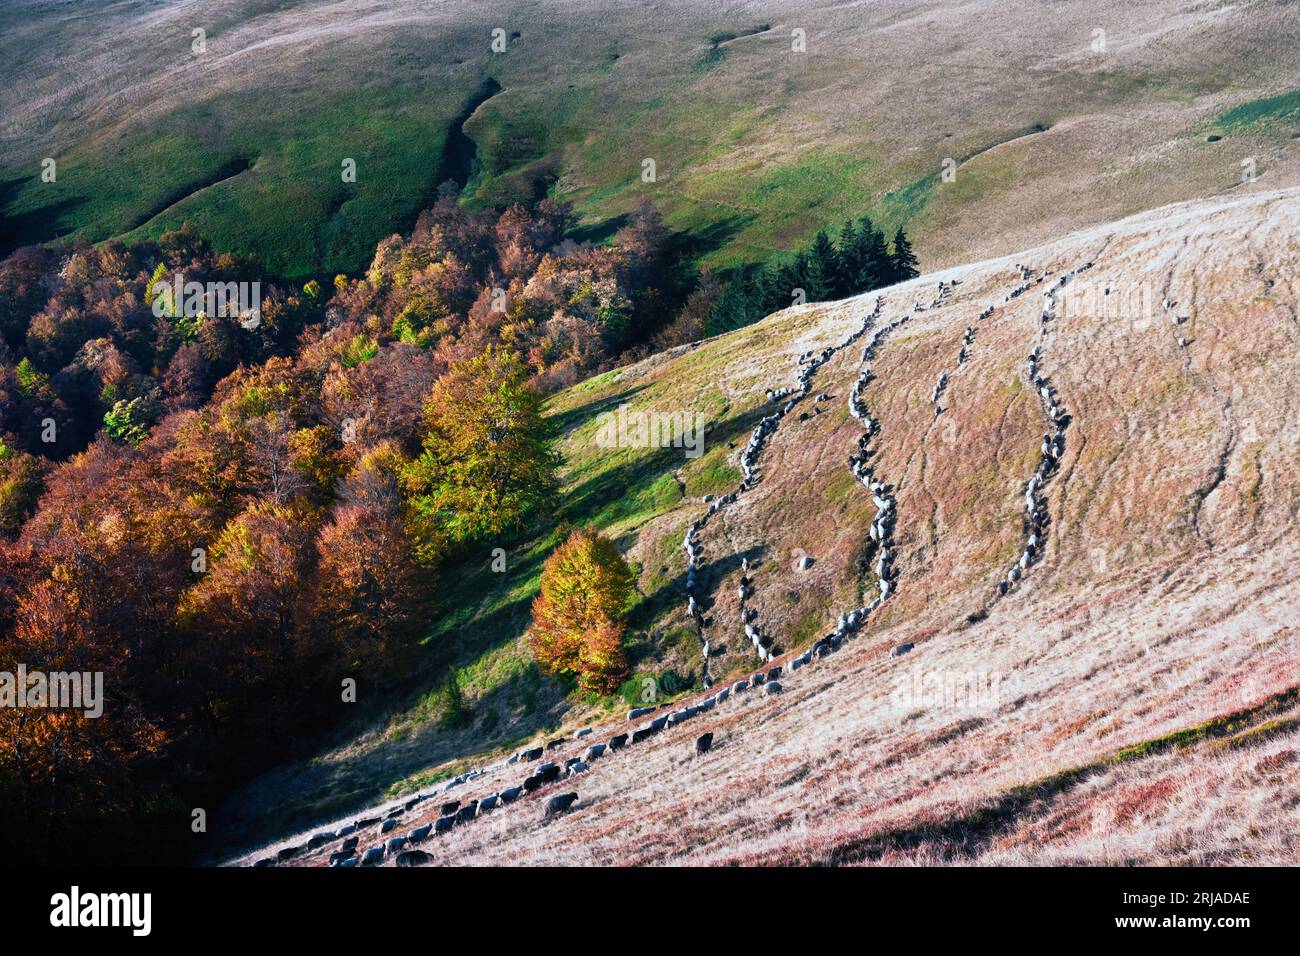 Mandria di pecore sulle colline autunnali dei Carpazi, Ucraina, Europa. Fotografia di paesaggi Foto Stock